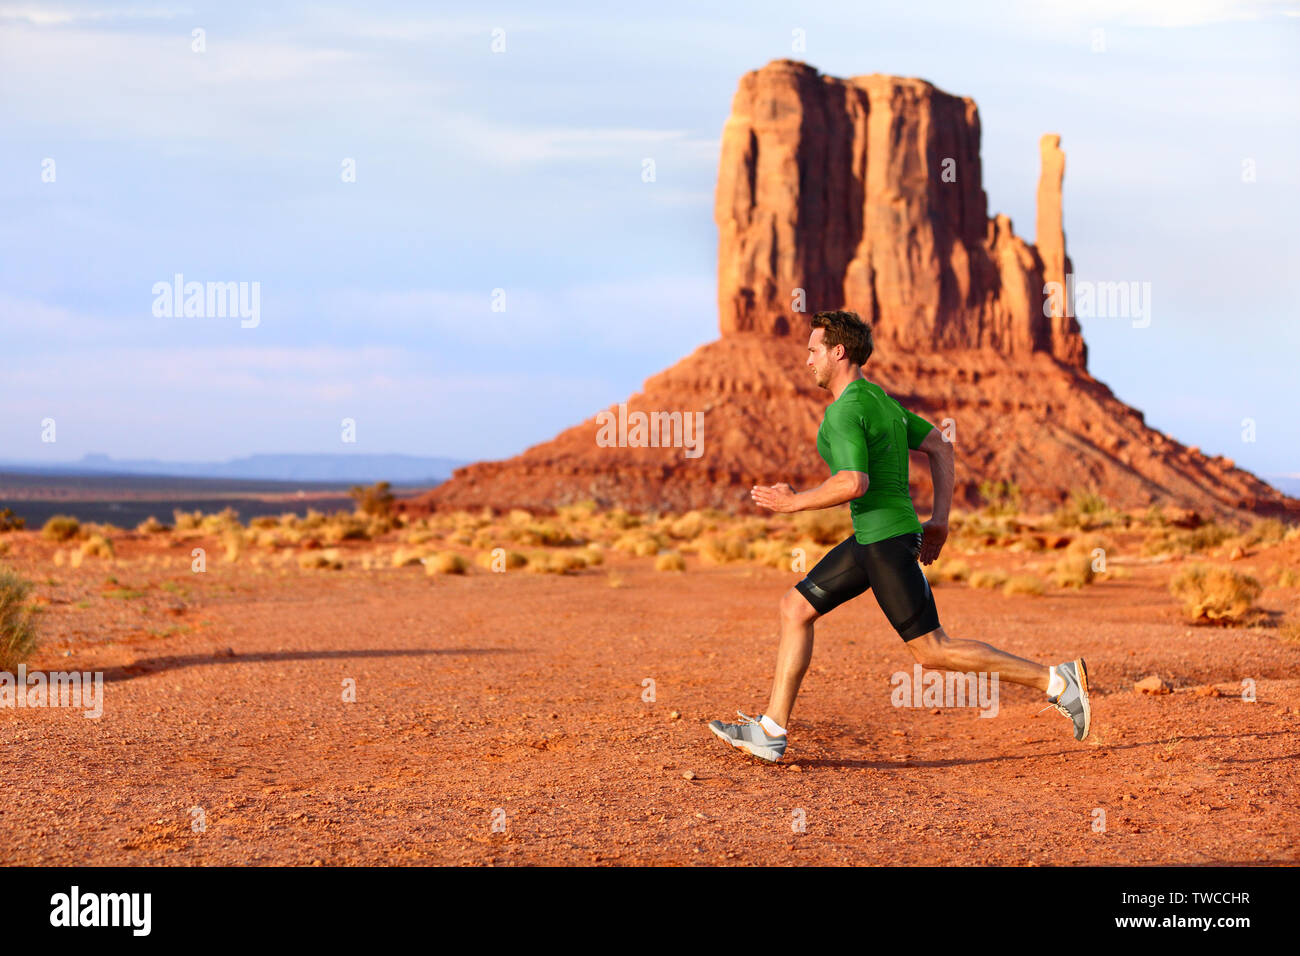 Laufender Mann sprinten im Monument Valley. Athlet runner cross country Trail Running draußen in der Natur Landschaft. Passen männlich Sport Modell in schnellen Sprint bei der Geschwindigkeit im Freien, Arizona, Utah, USA. Stockfoto